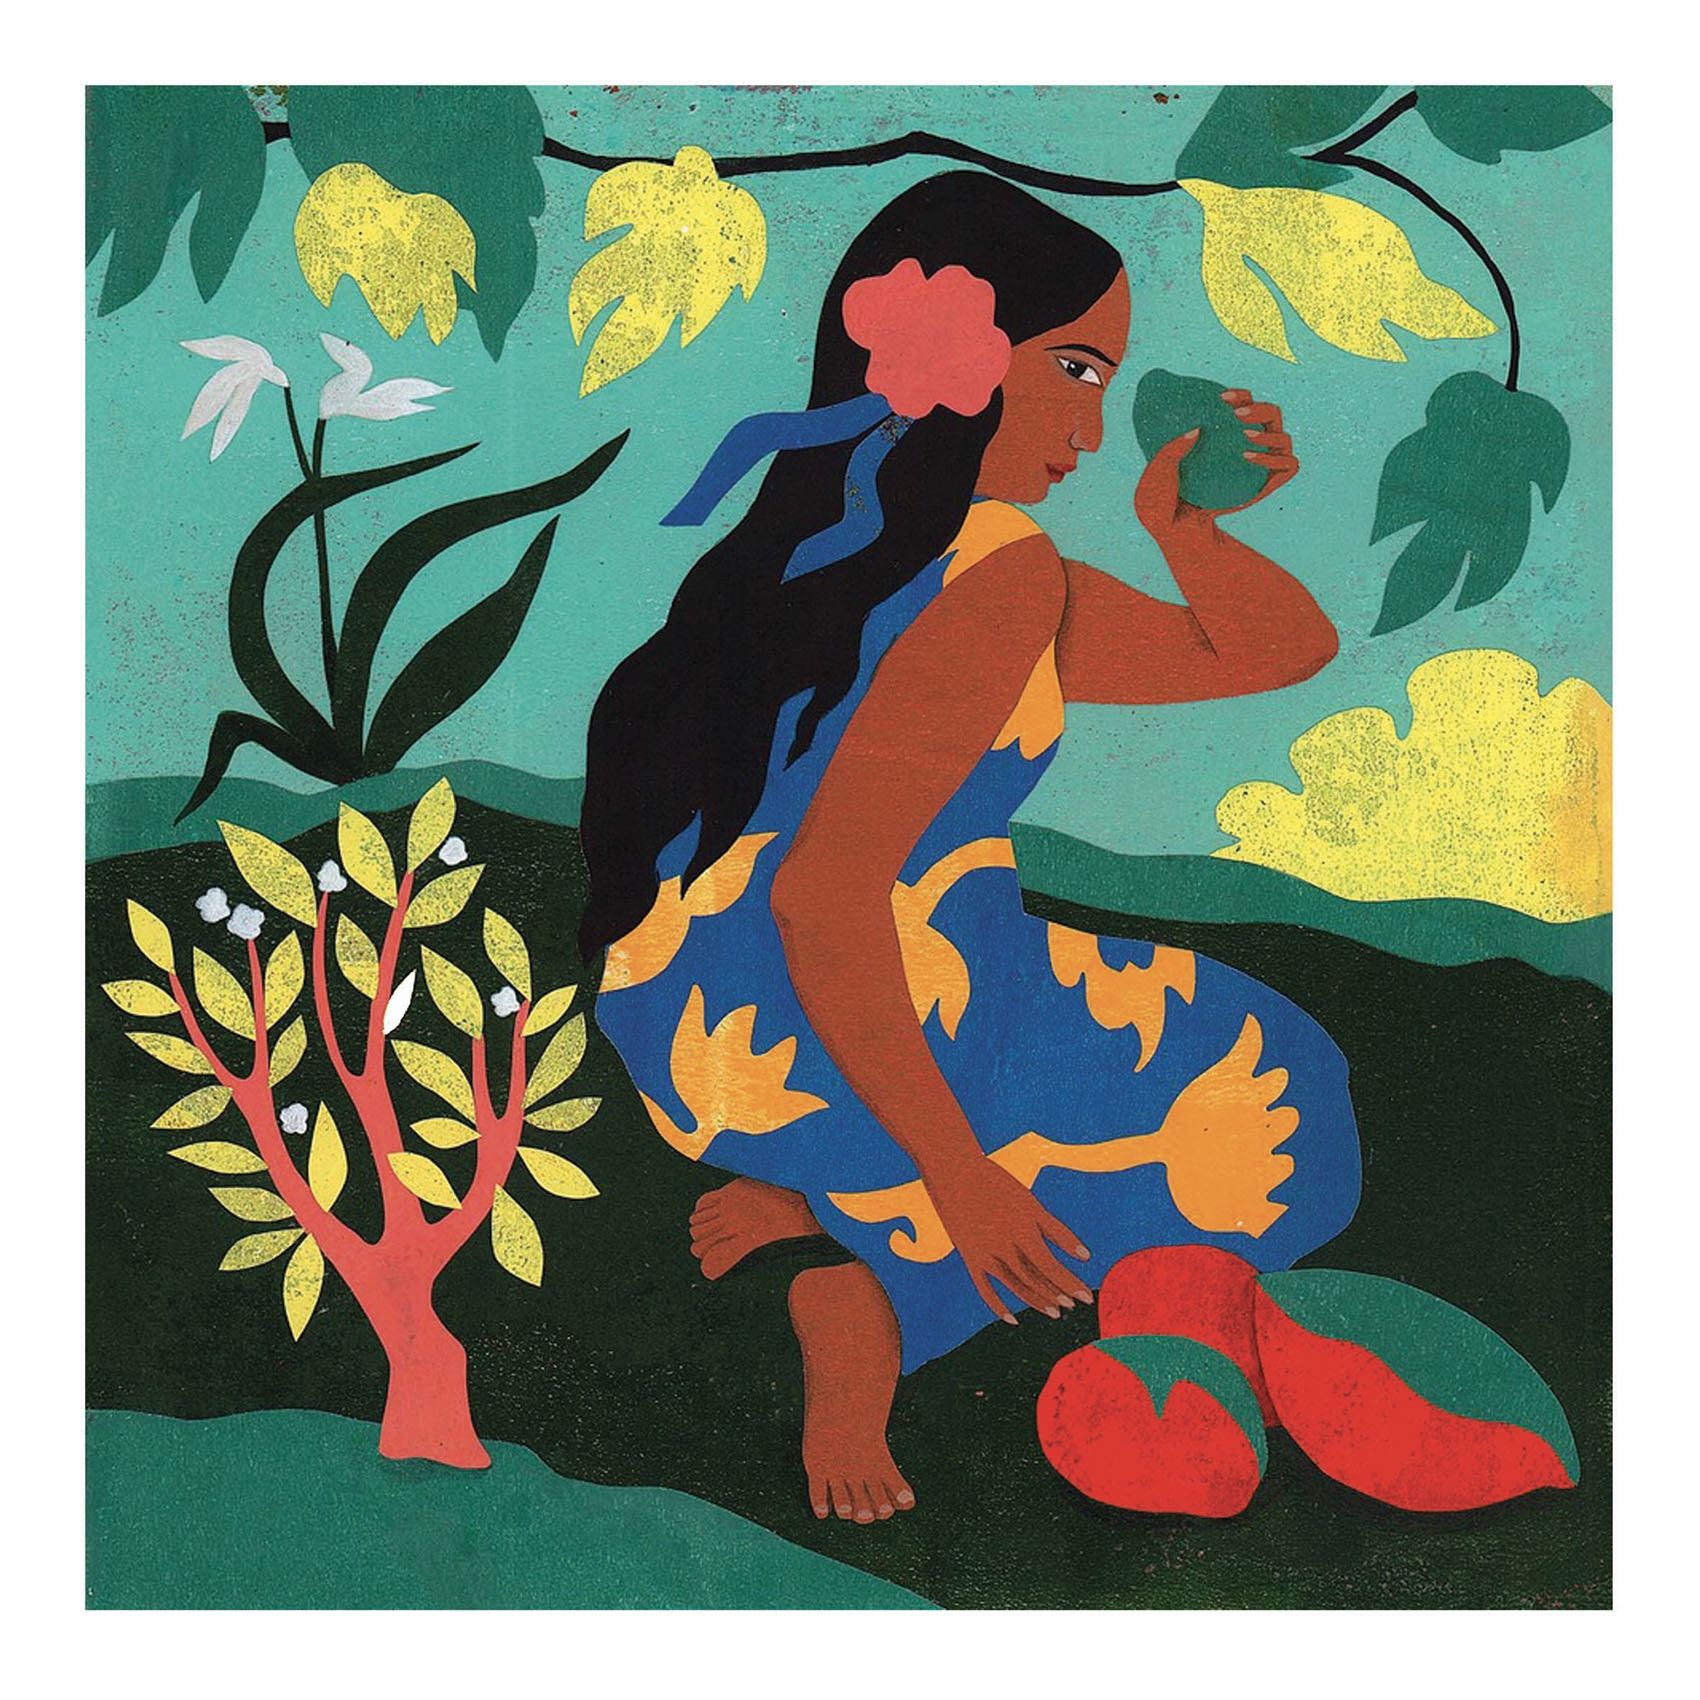 Művészeti műhely - Polinézia - Inspired by Paul Gauguin - Polynesia - 2